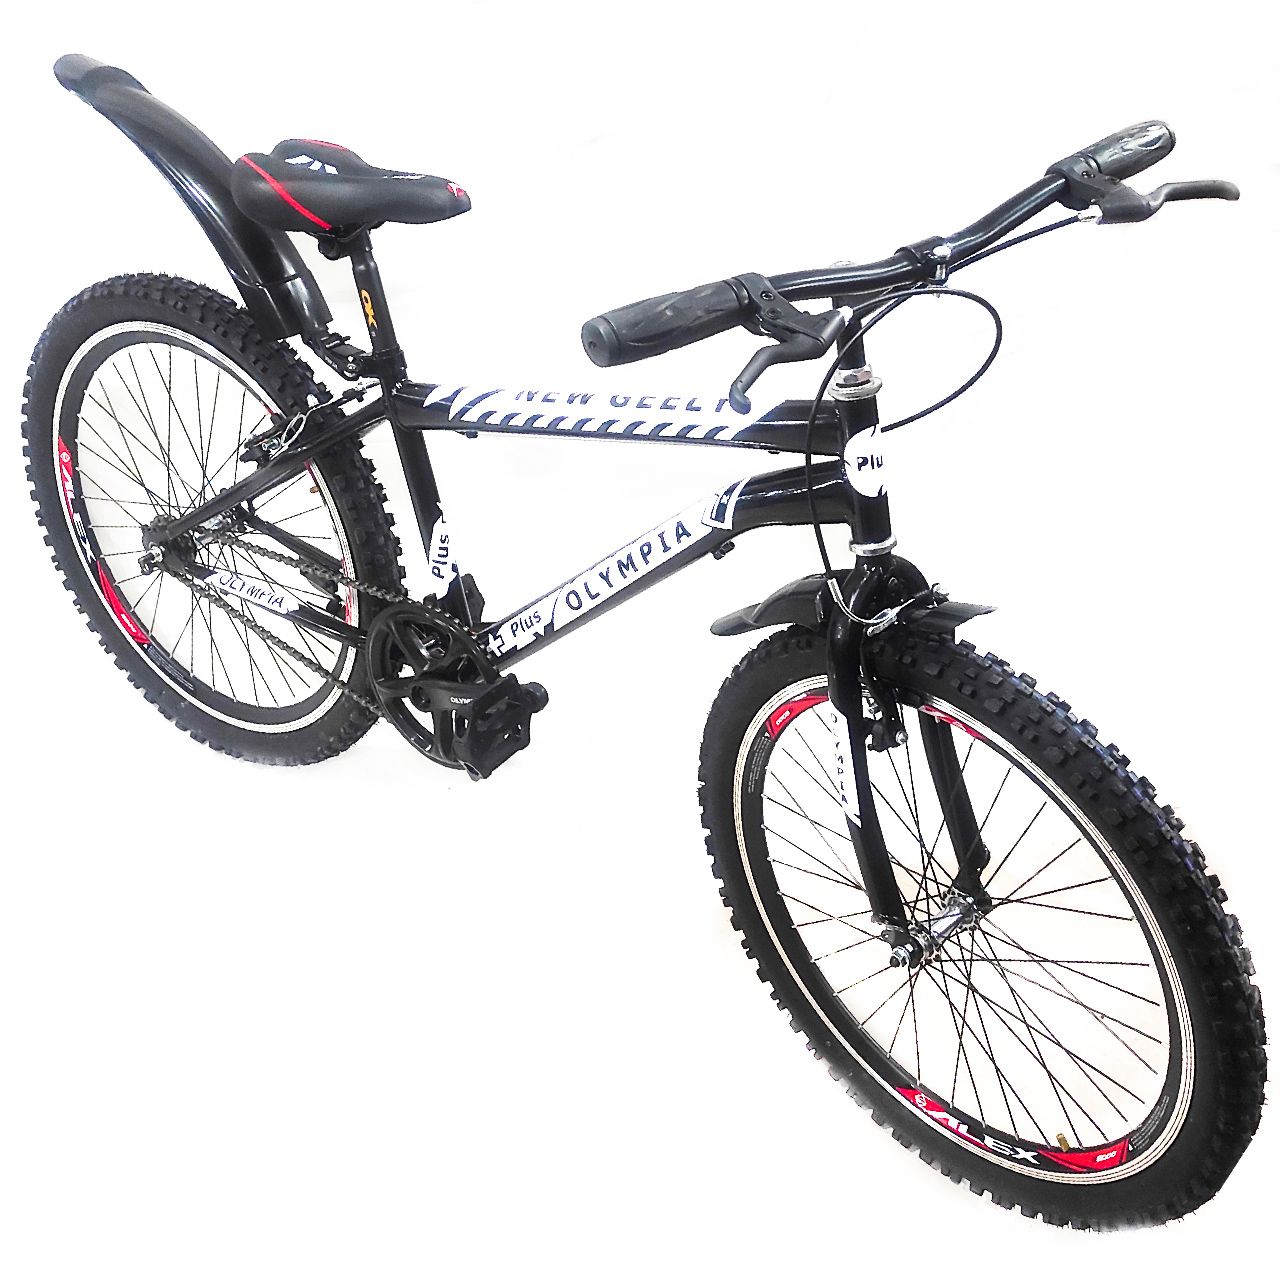 دوچرخه شهری المپیا مدل gelly w200 تک سرعت سایز 24 -  - 2